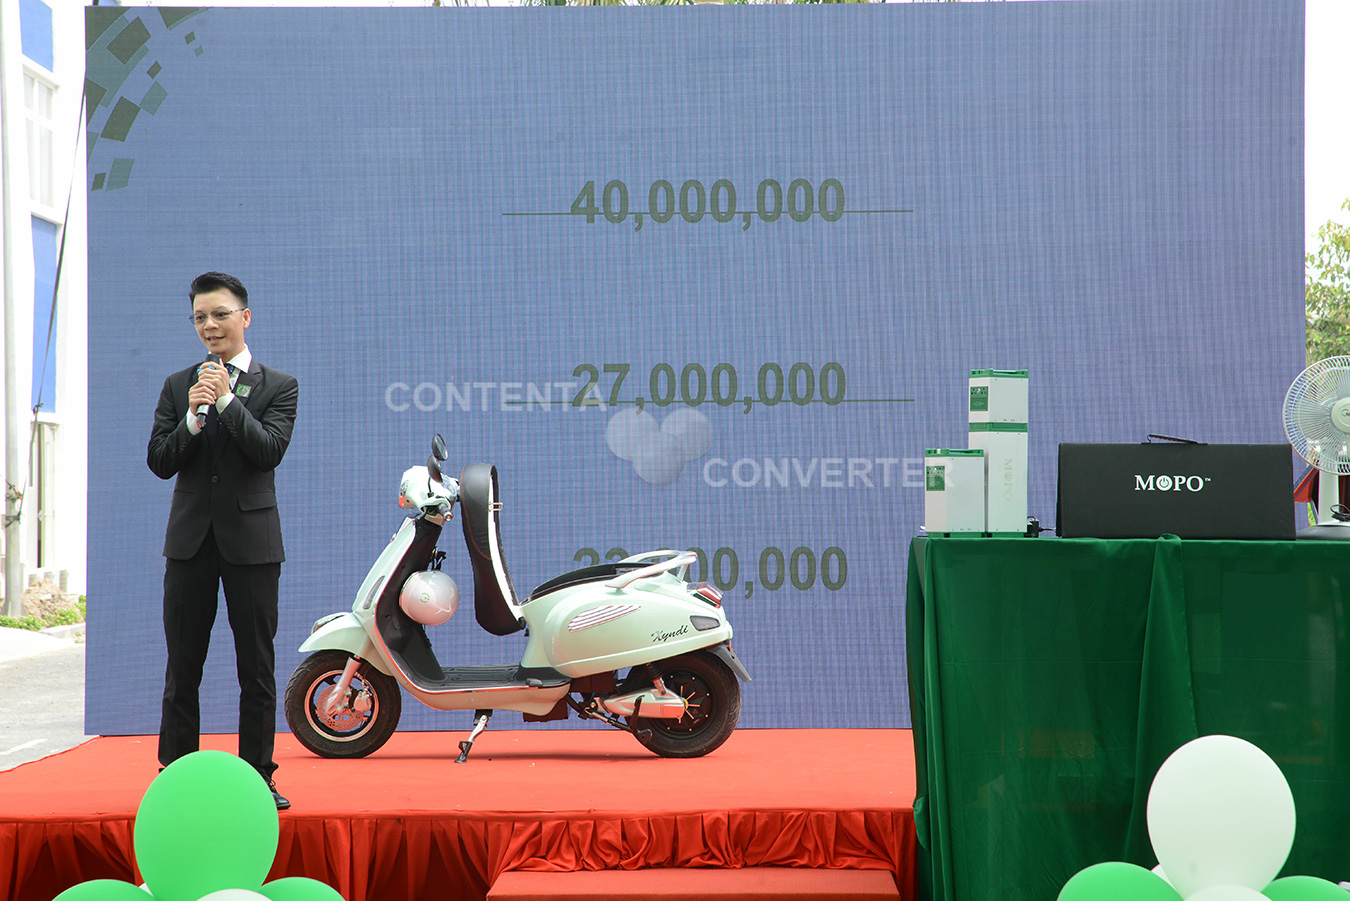 Ceo Mopo công bố mức giá bán siêu hời chỉ với 27 triệu đồng cho dòng xe siêu tính năng